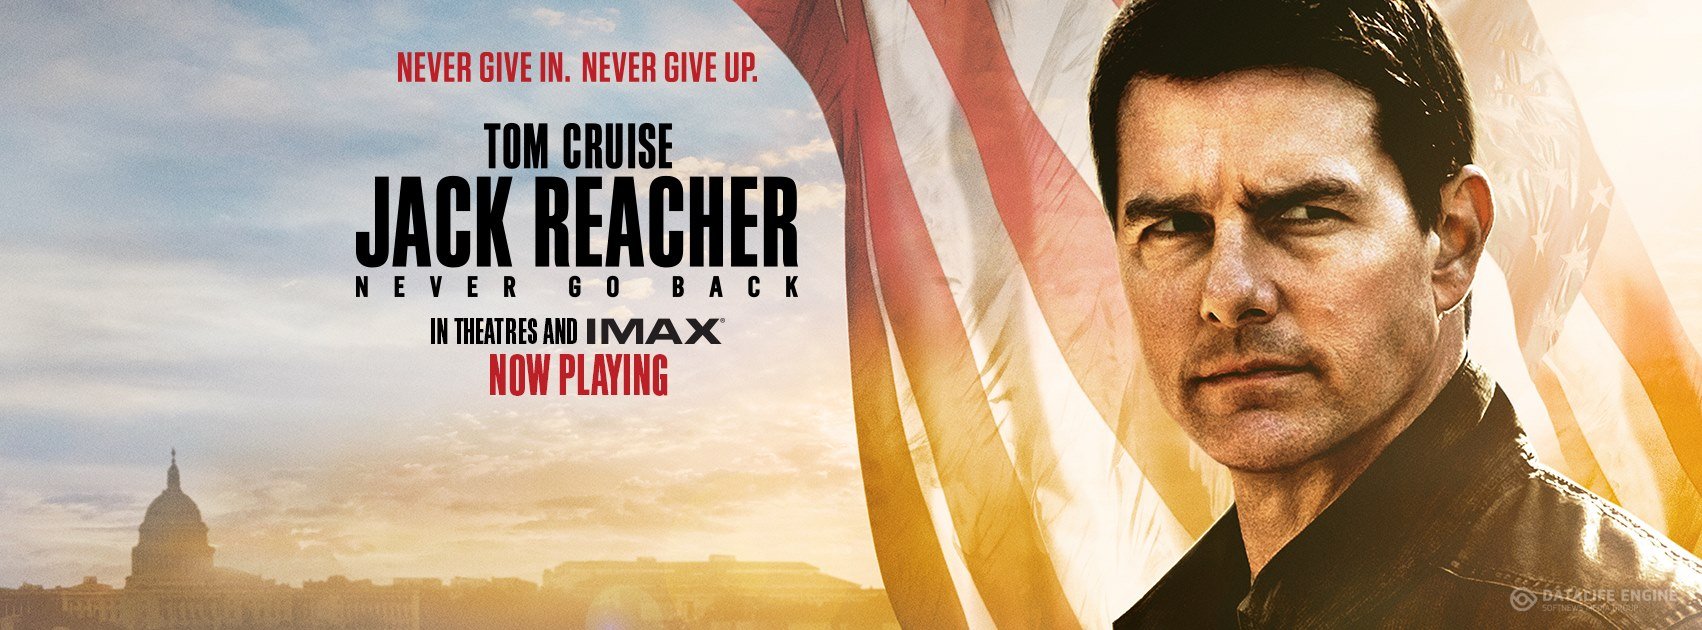 Jack Reacher Never Go Back 4K 2016 big poster